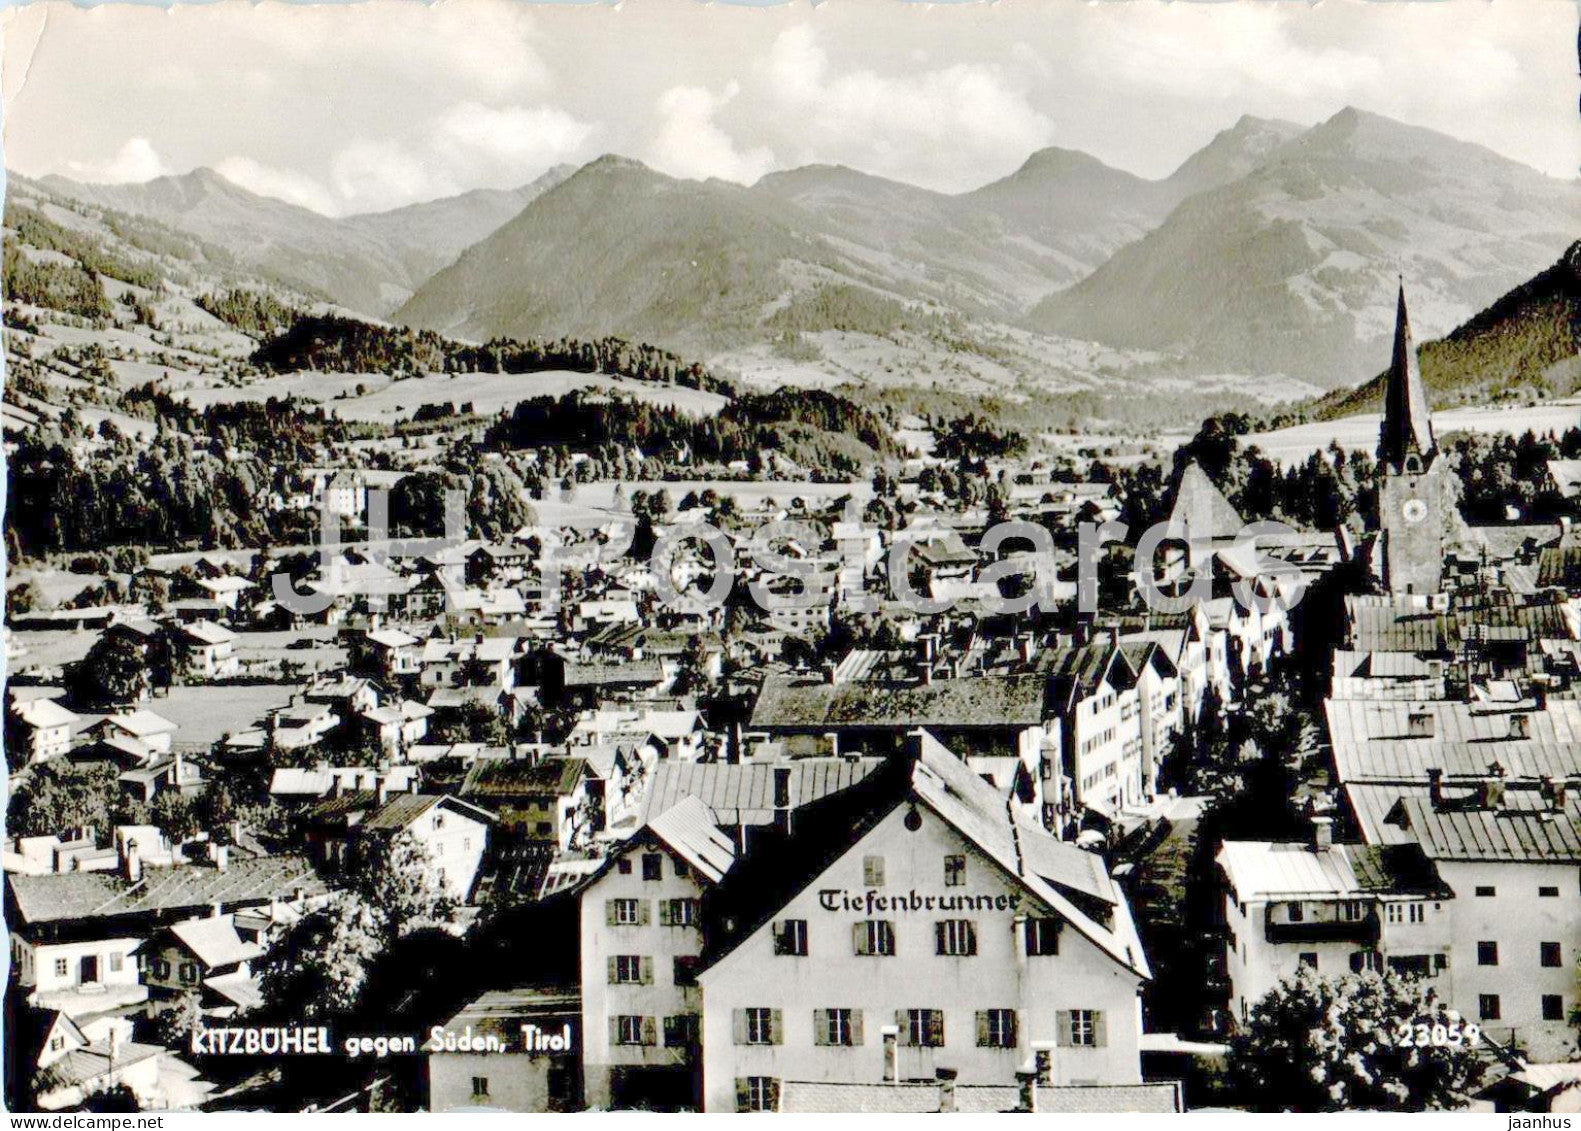 Kitzbuhel gegen Suden - Tirol - Tiefenbrunner - 23059 - old postcard - 1956 - Austria - used - JH Postcards